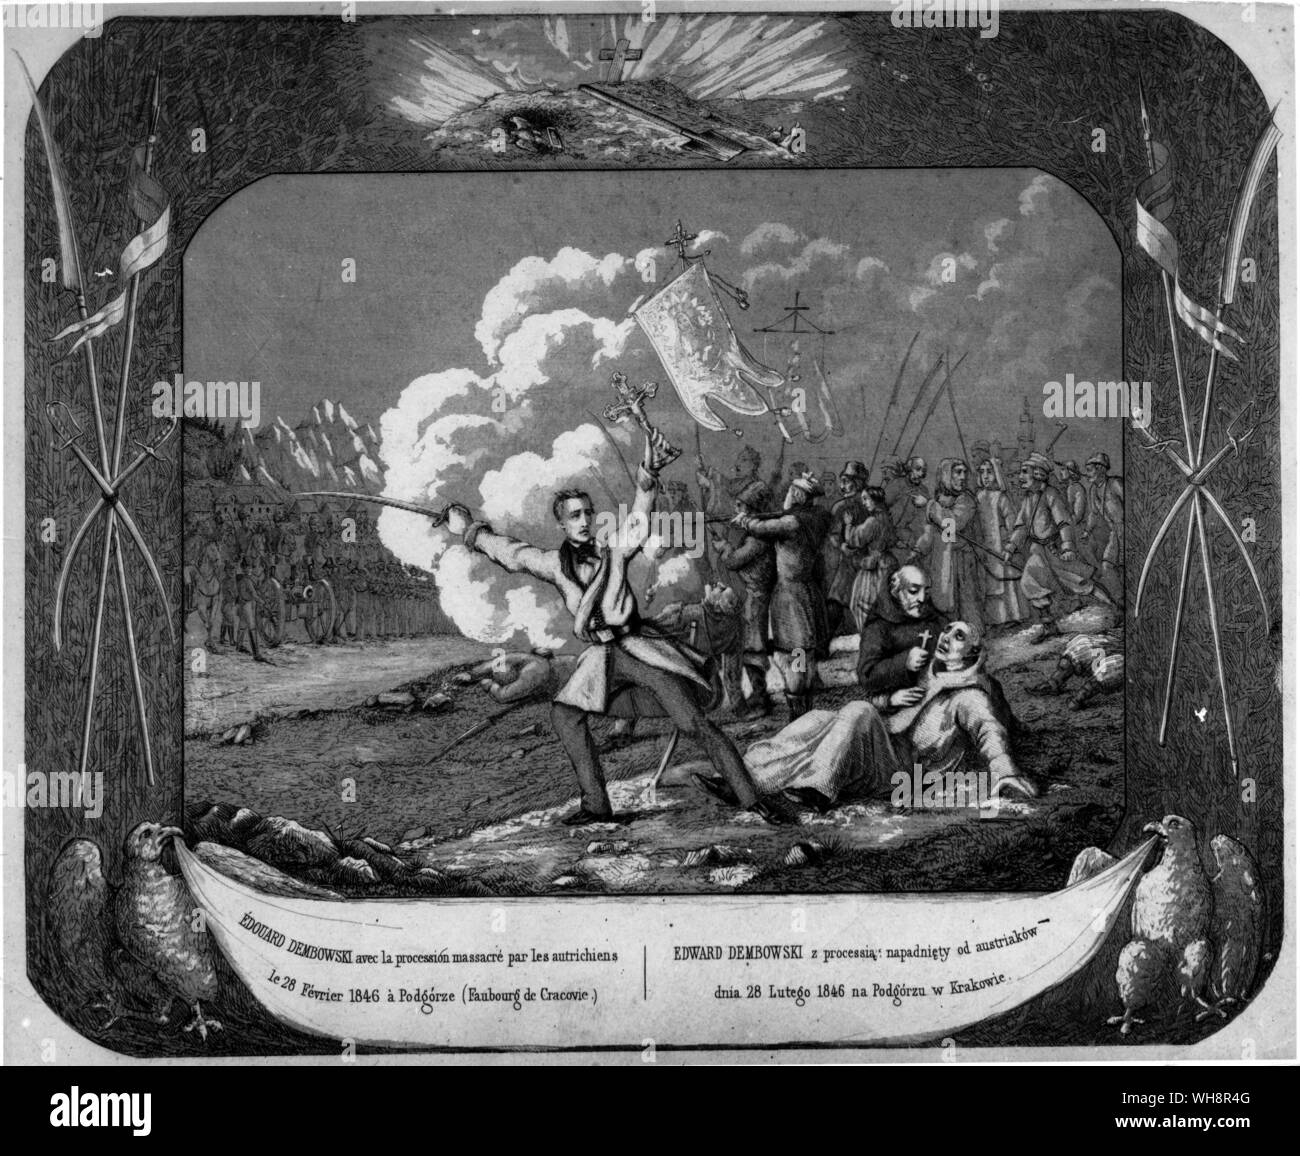 Un incidente vicino a Cracovia nel 1846 quando le truppe austriache mettere giù una insurrezione polacca Foto Stock